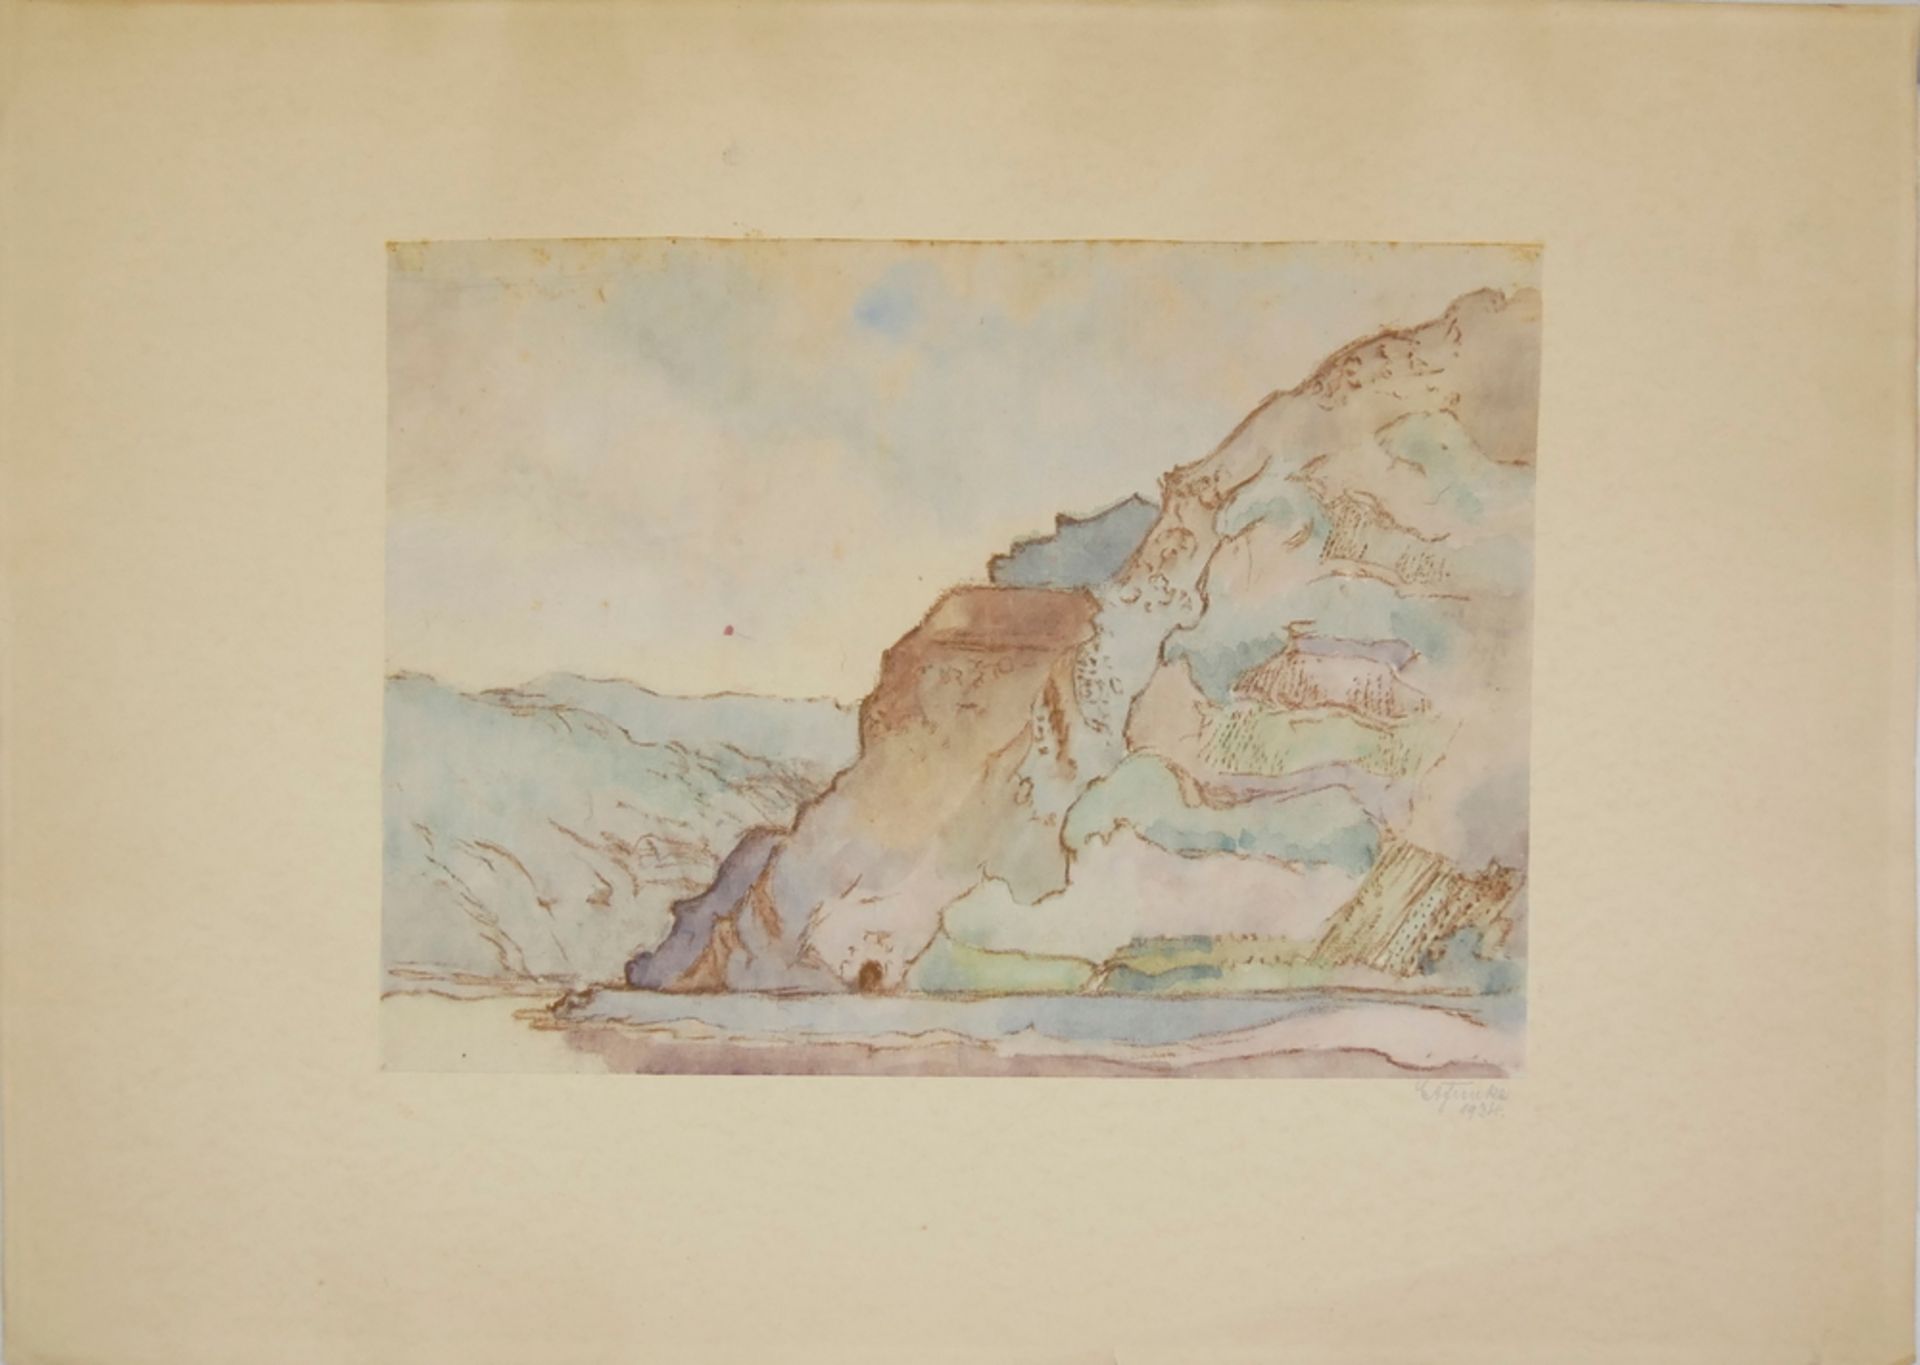 Aquarell, "Bergsee", von Ernst August Funke, aus Nachlaß-Auflösung, Teil 1, Signatur und